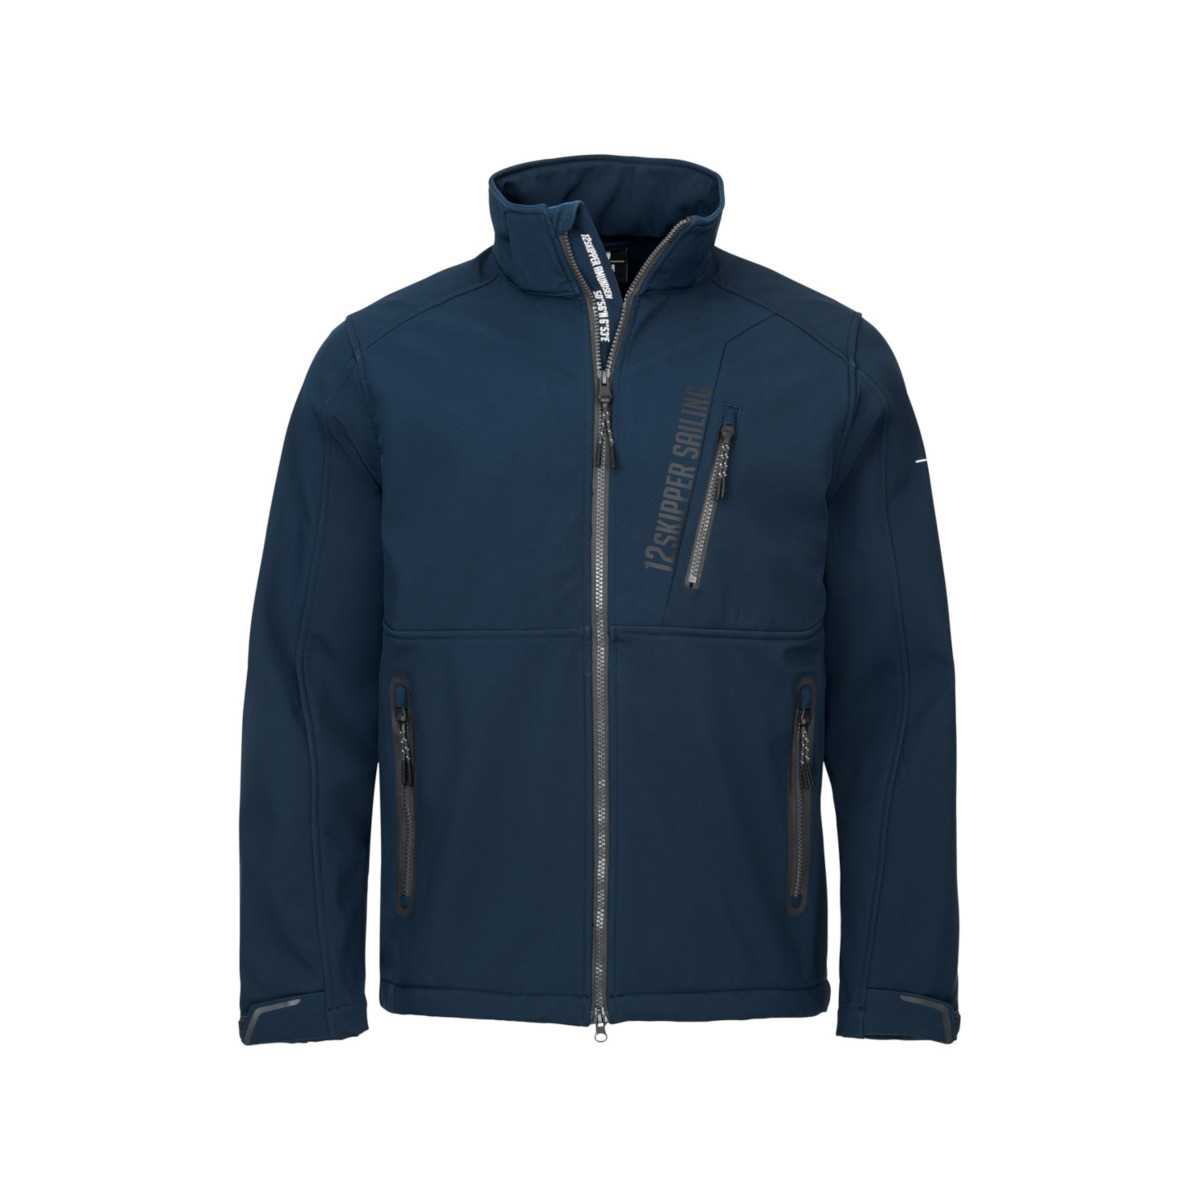 12skipper Amundsen Softshell giacca blu navy, taglia M